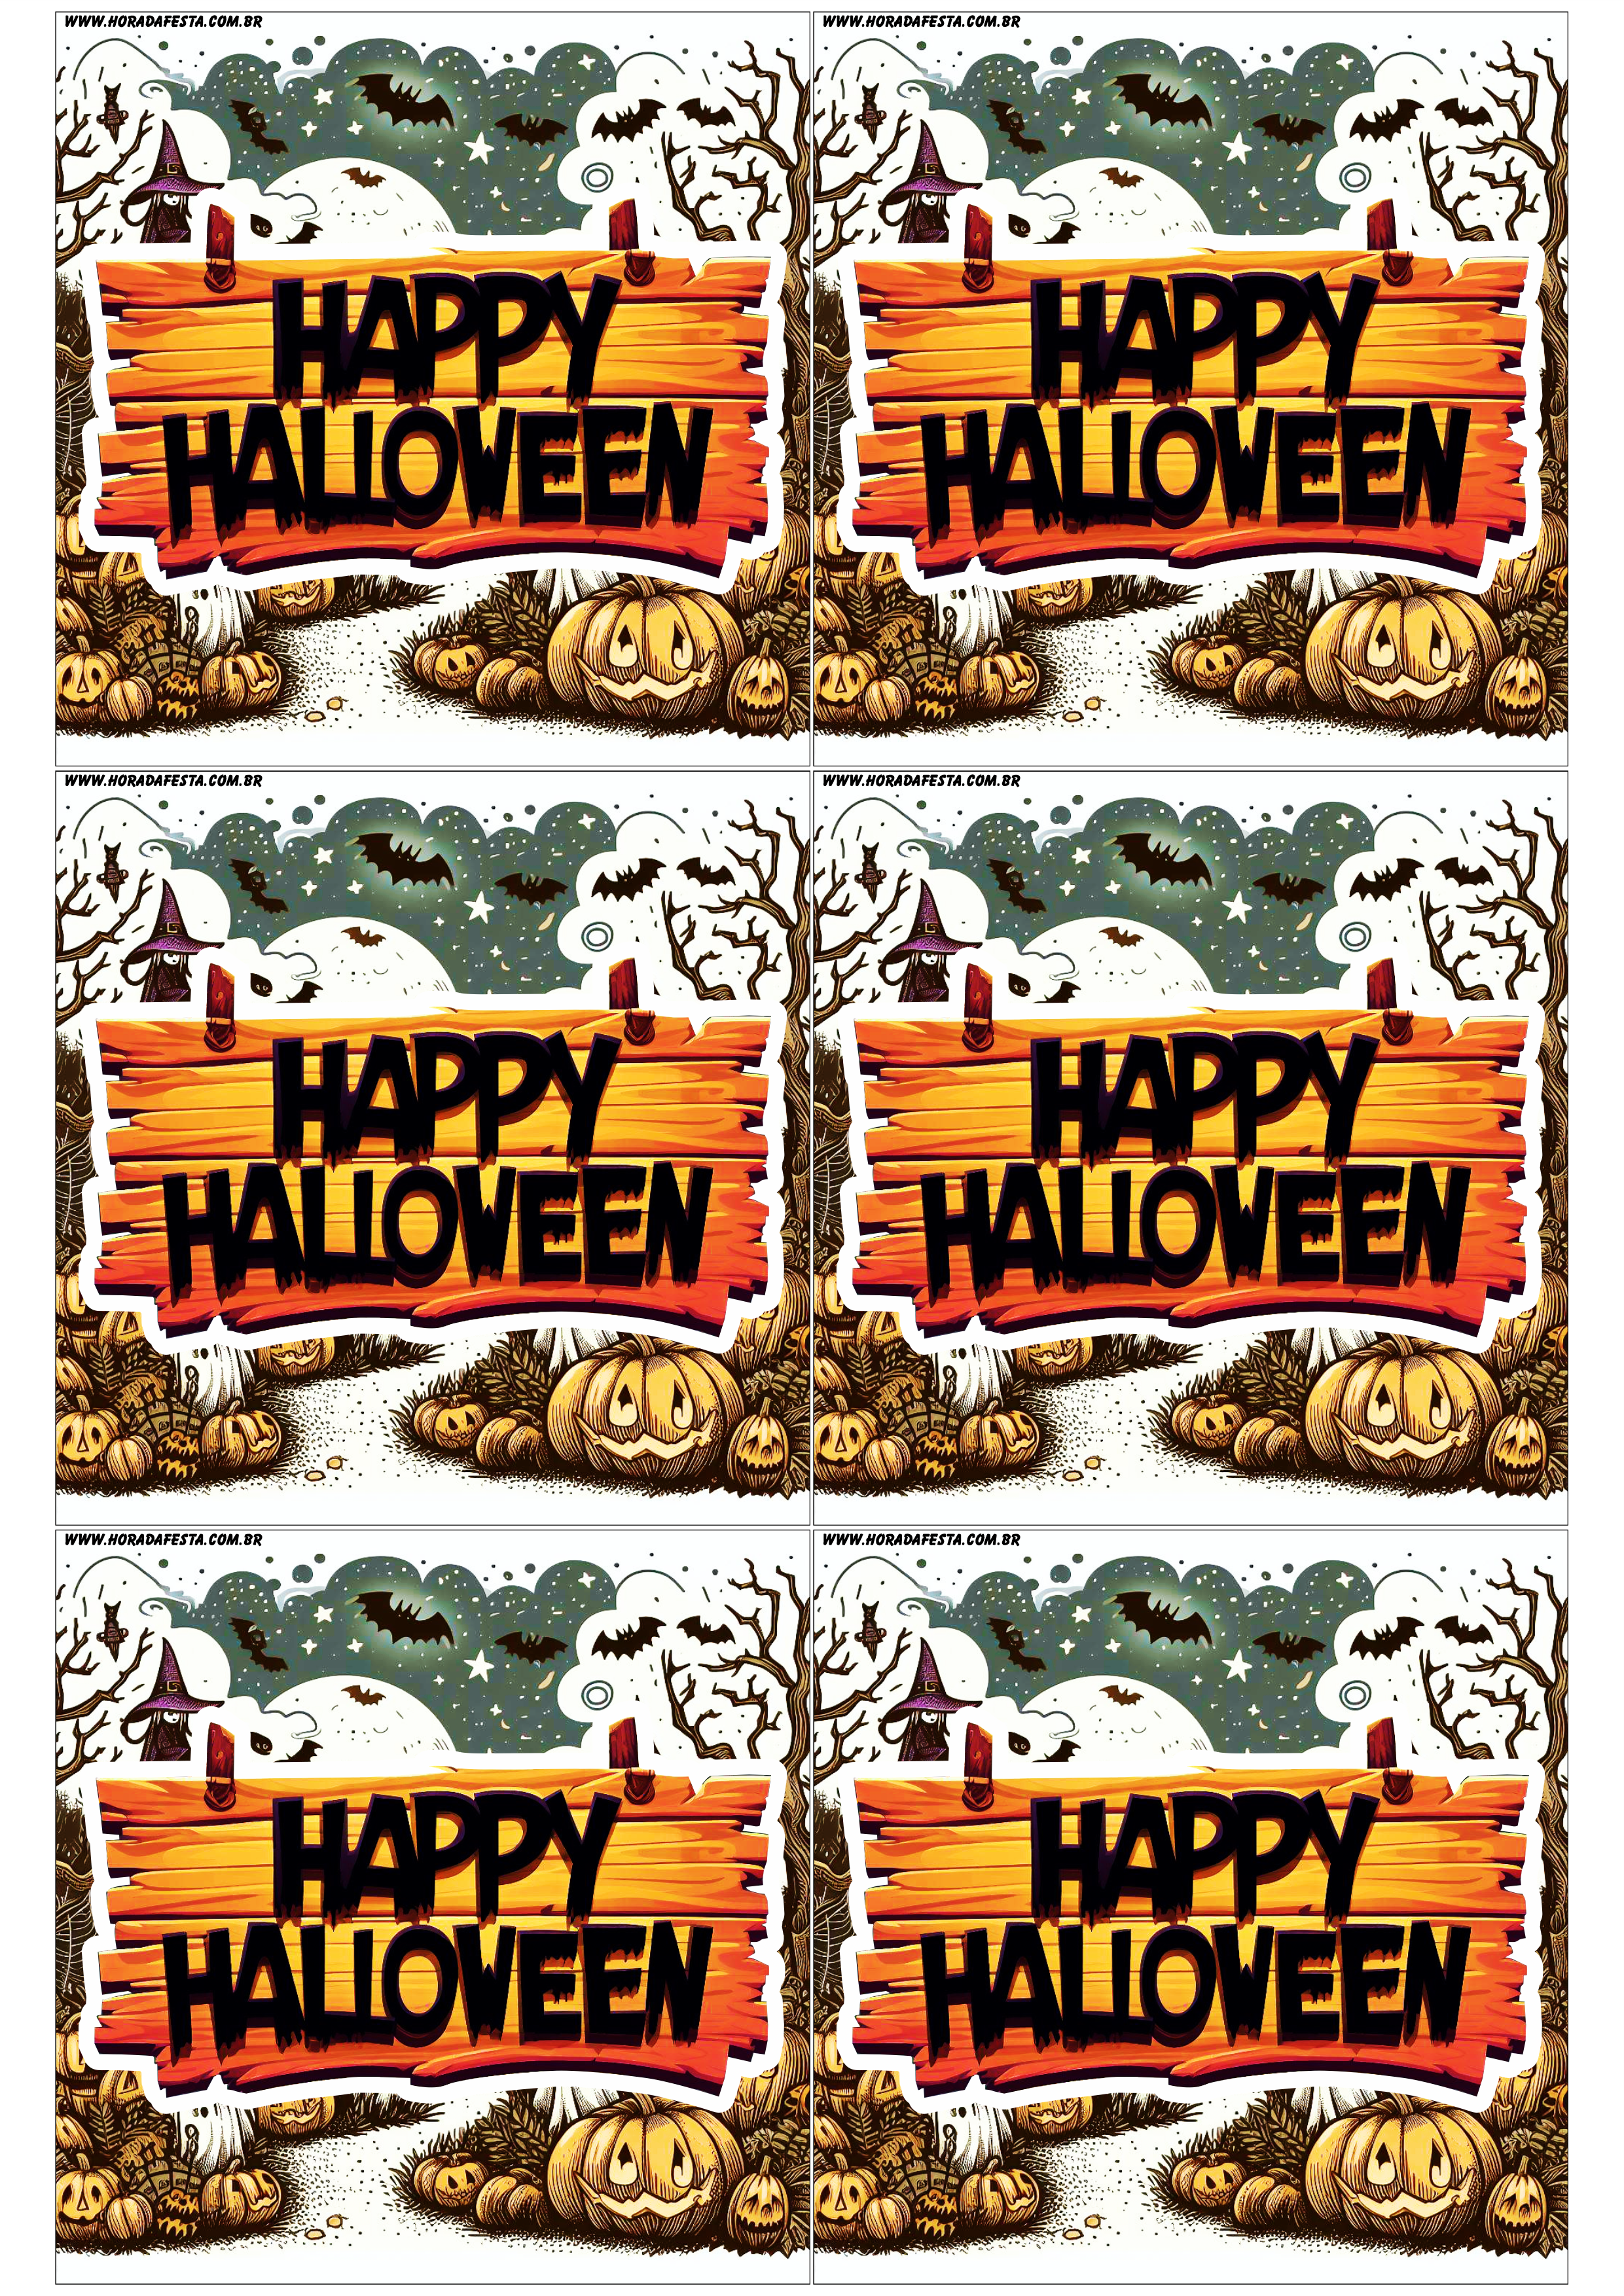 Happy Halloween adesivo tag sticker painel decoração grátis de festa artigos de papelaria design 6 imagens png